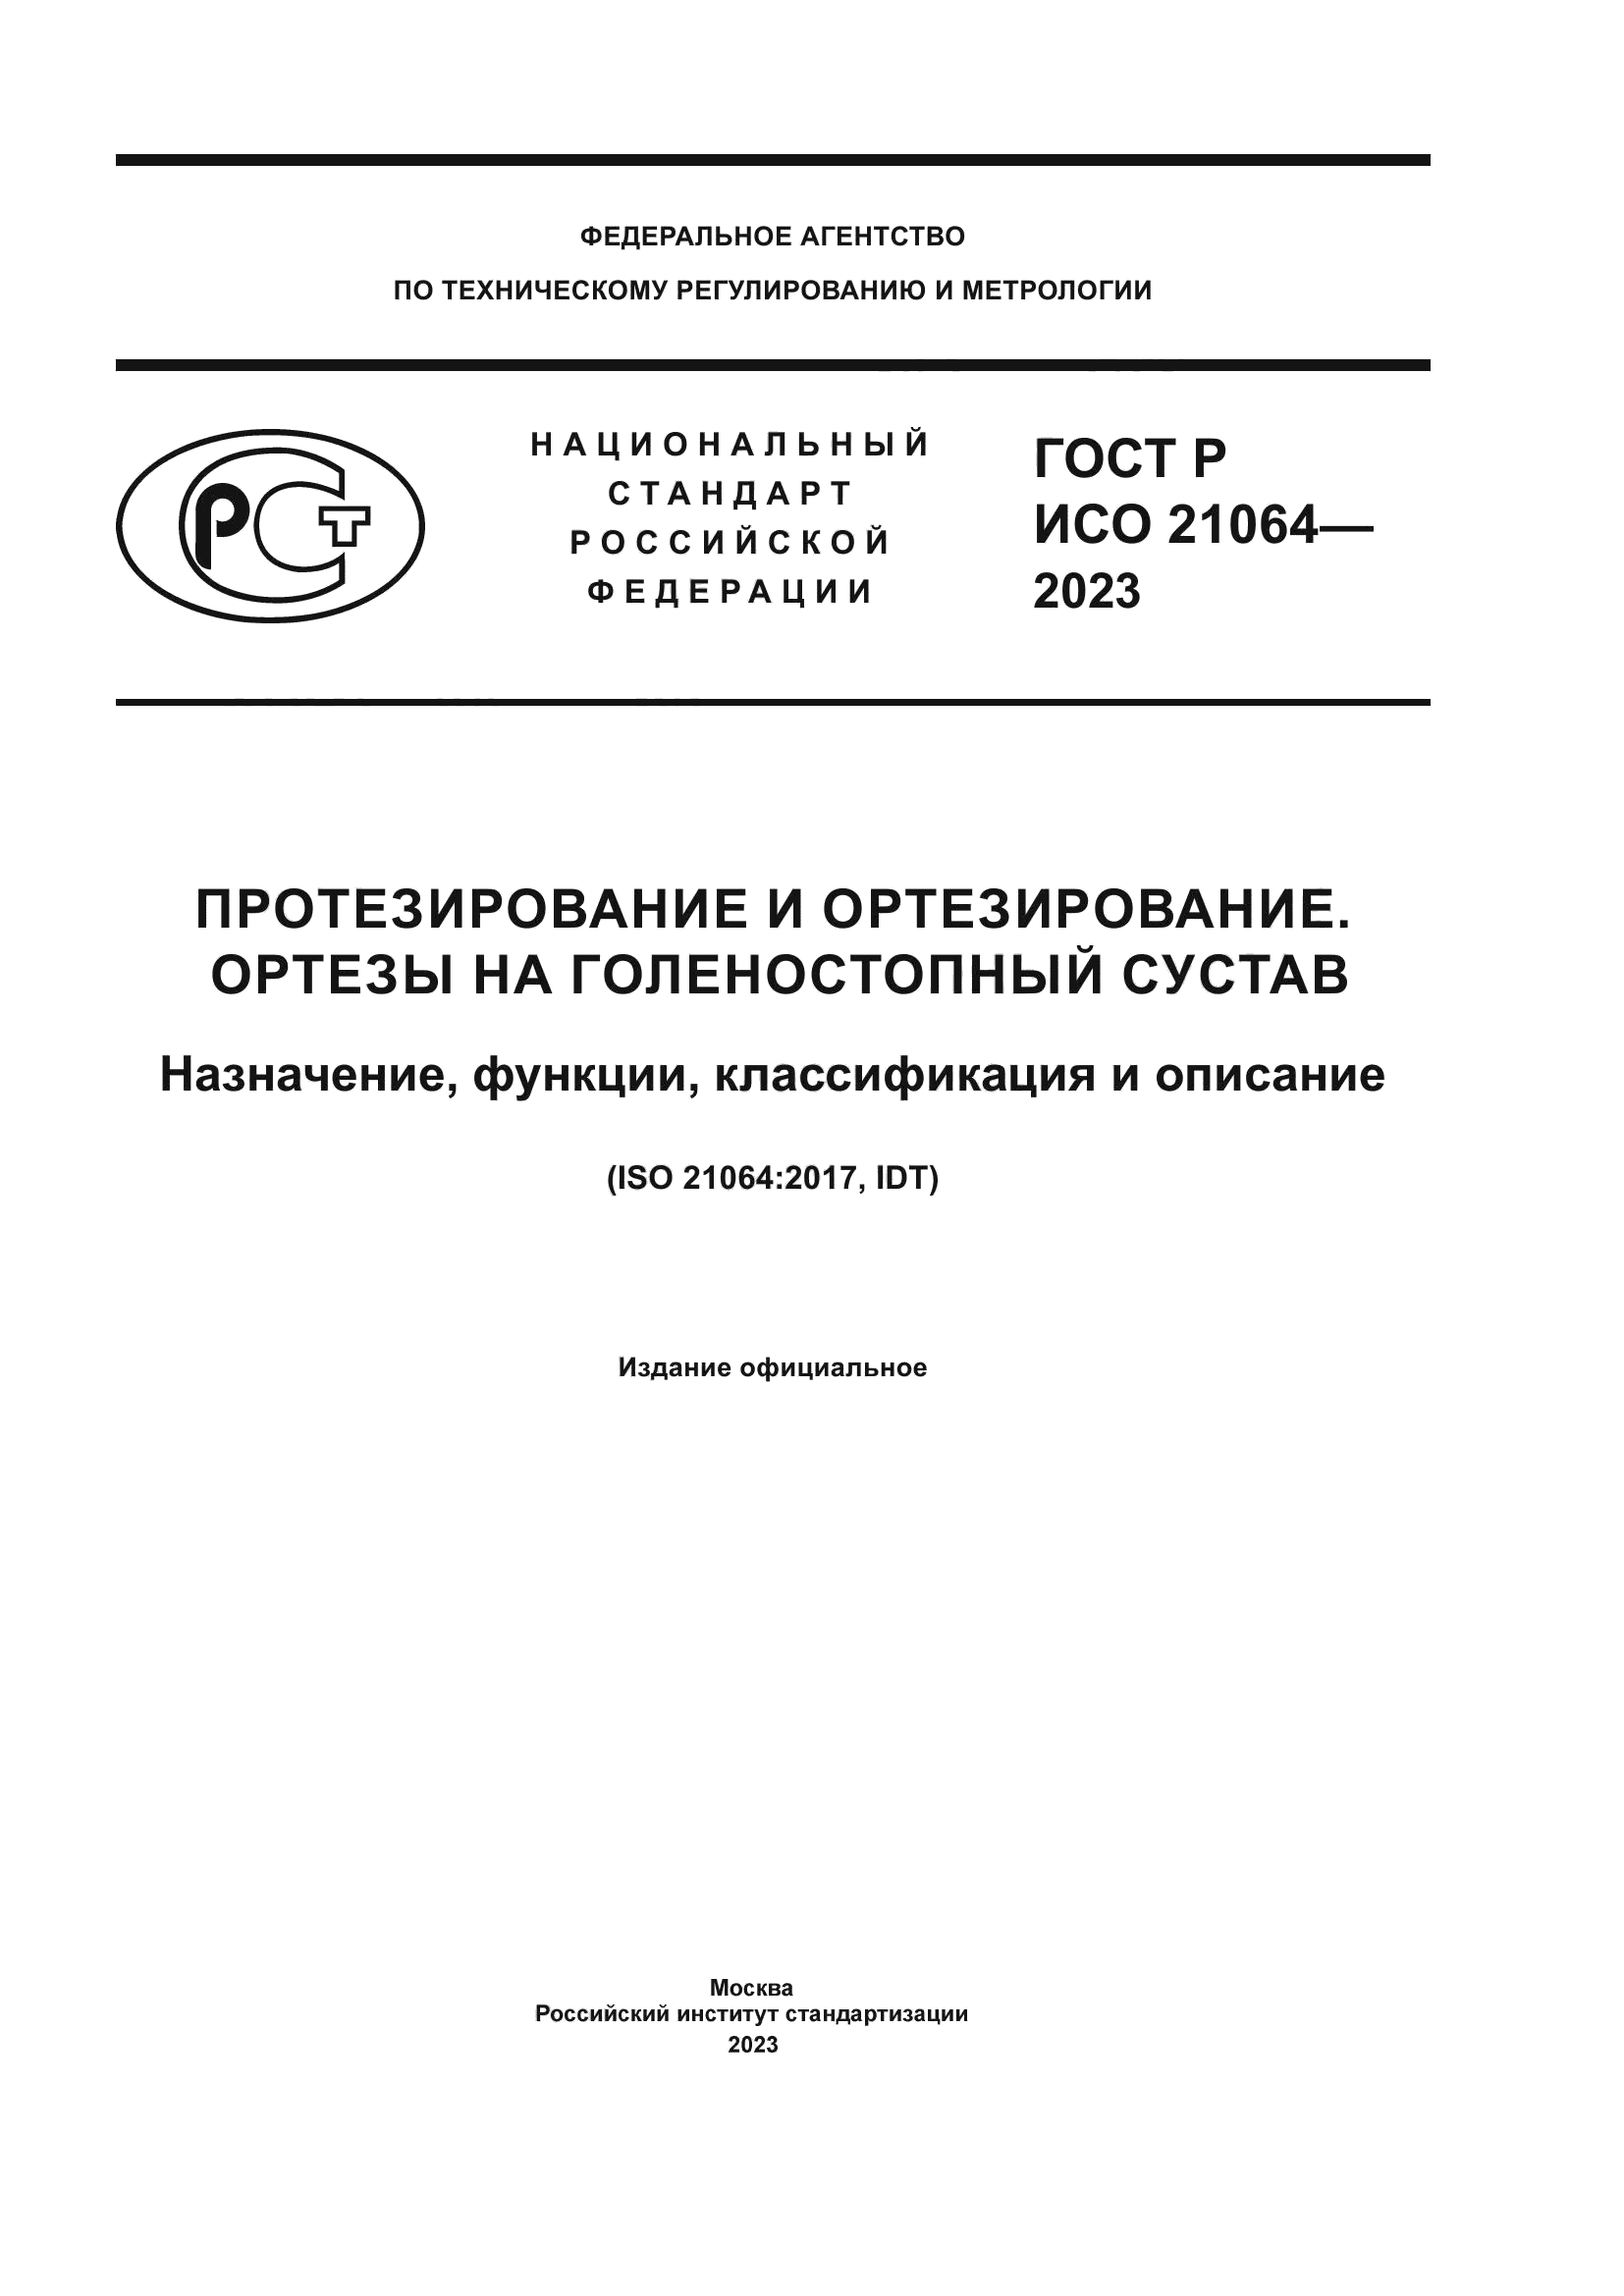 ГОСТ Р ИСО 21064-2023